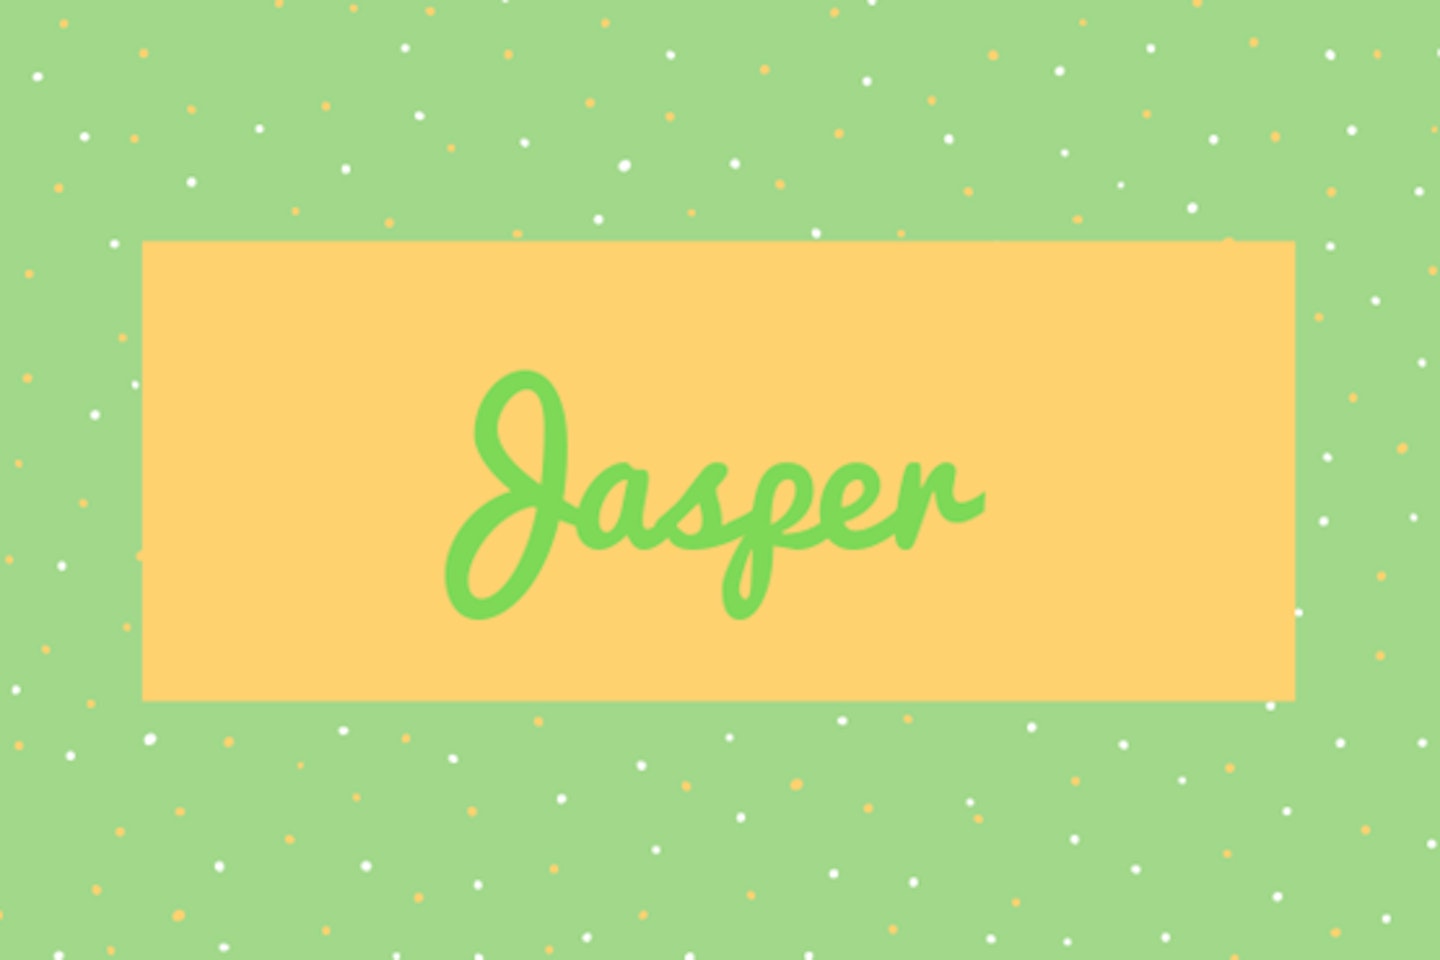 4) Jasper